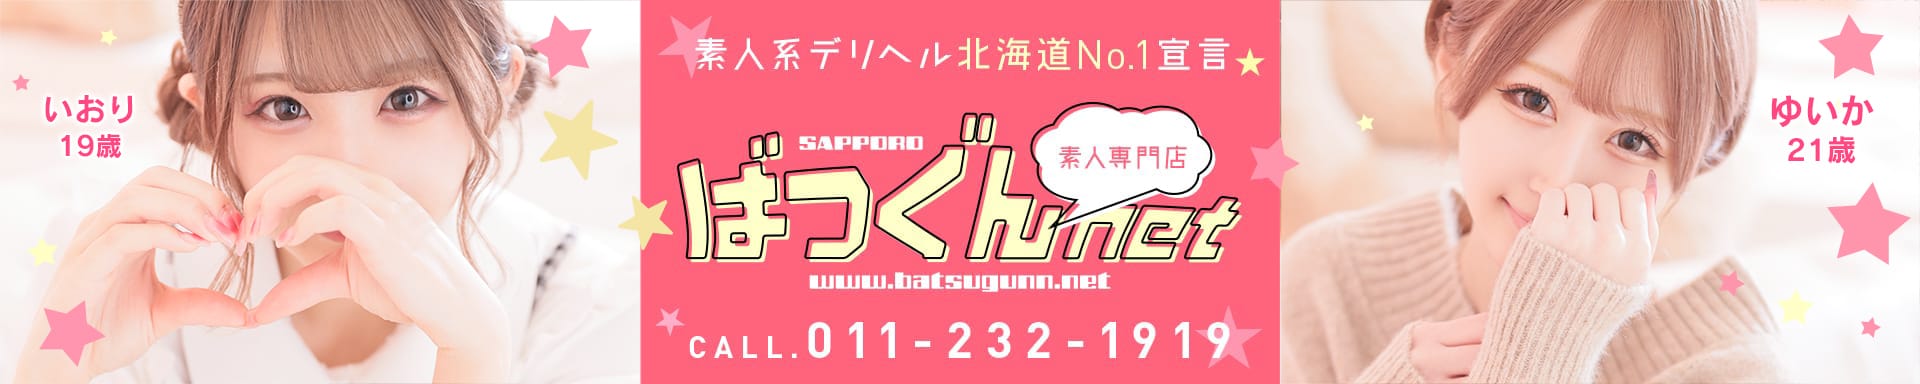 SAPPORO ばつぐんnet - 札幌・すすきの